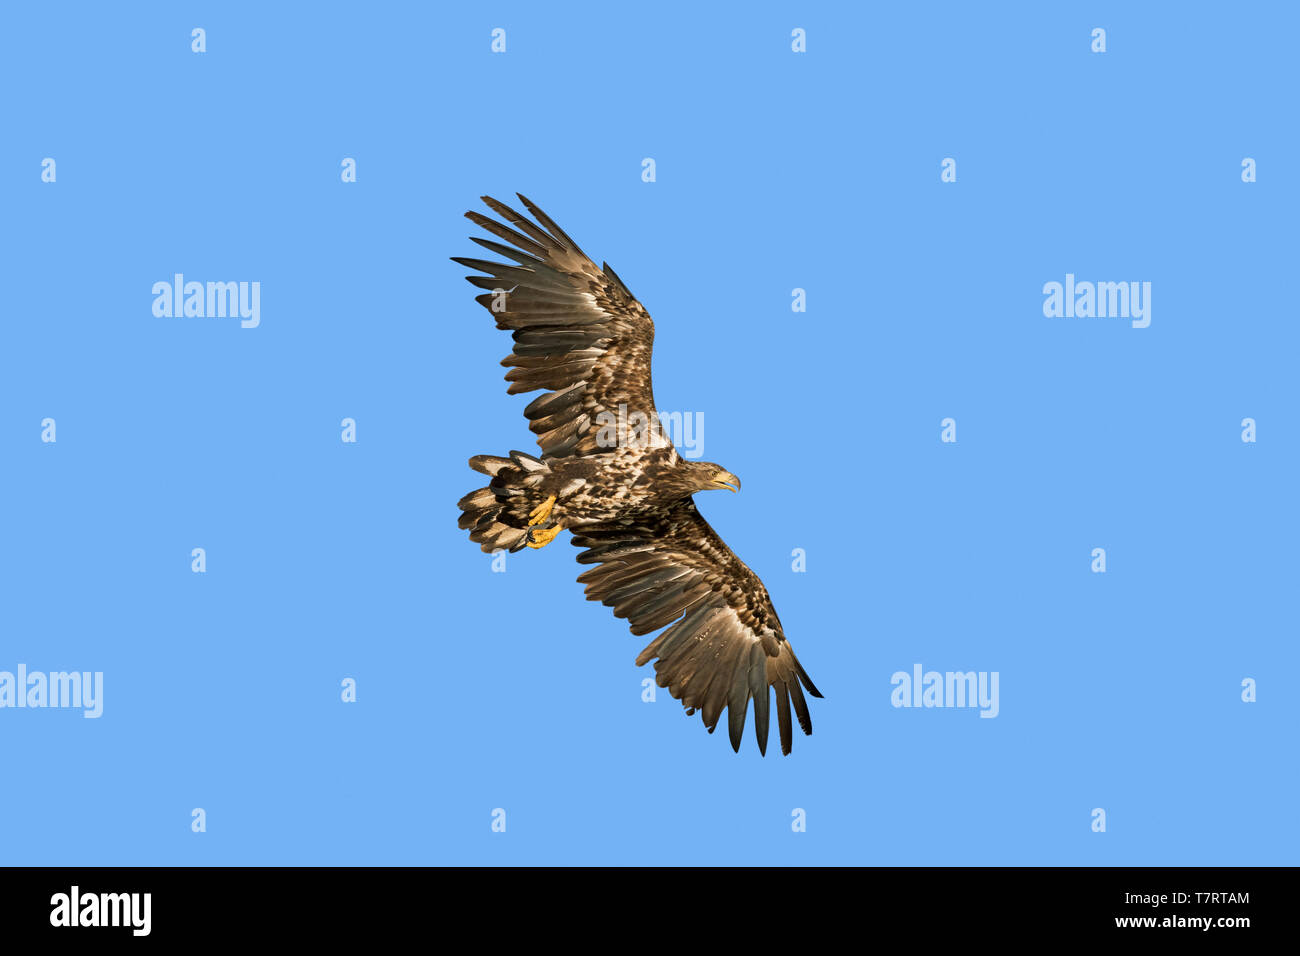 White-tailed eagle / sea eagle / erne (Haliaeetus albicilla) juvenile in flight soaring against blue sky Stock Photo